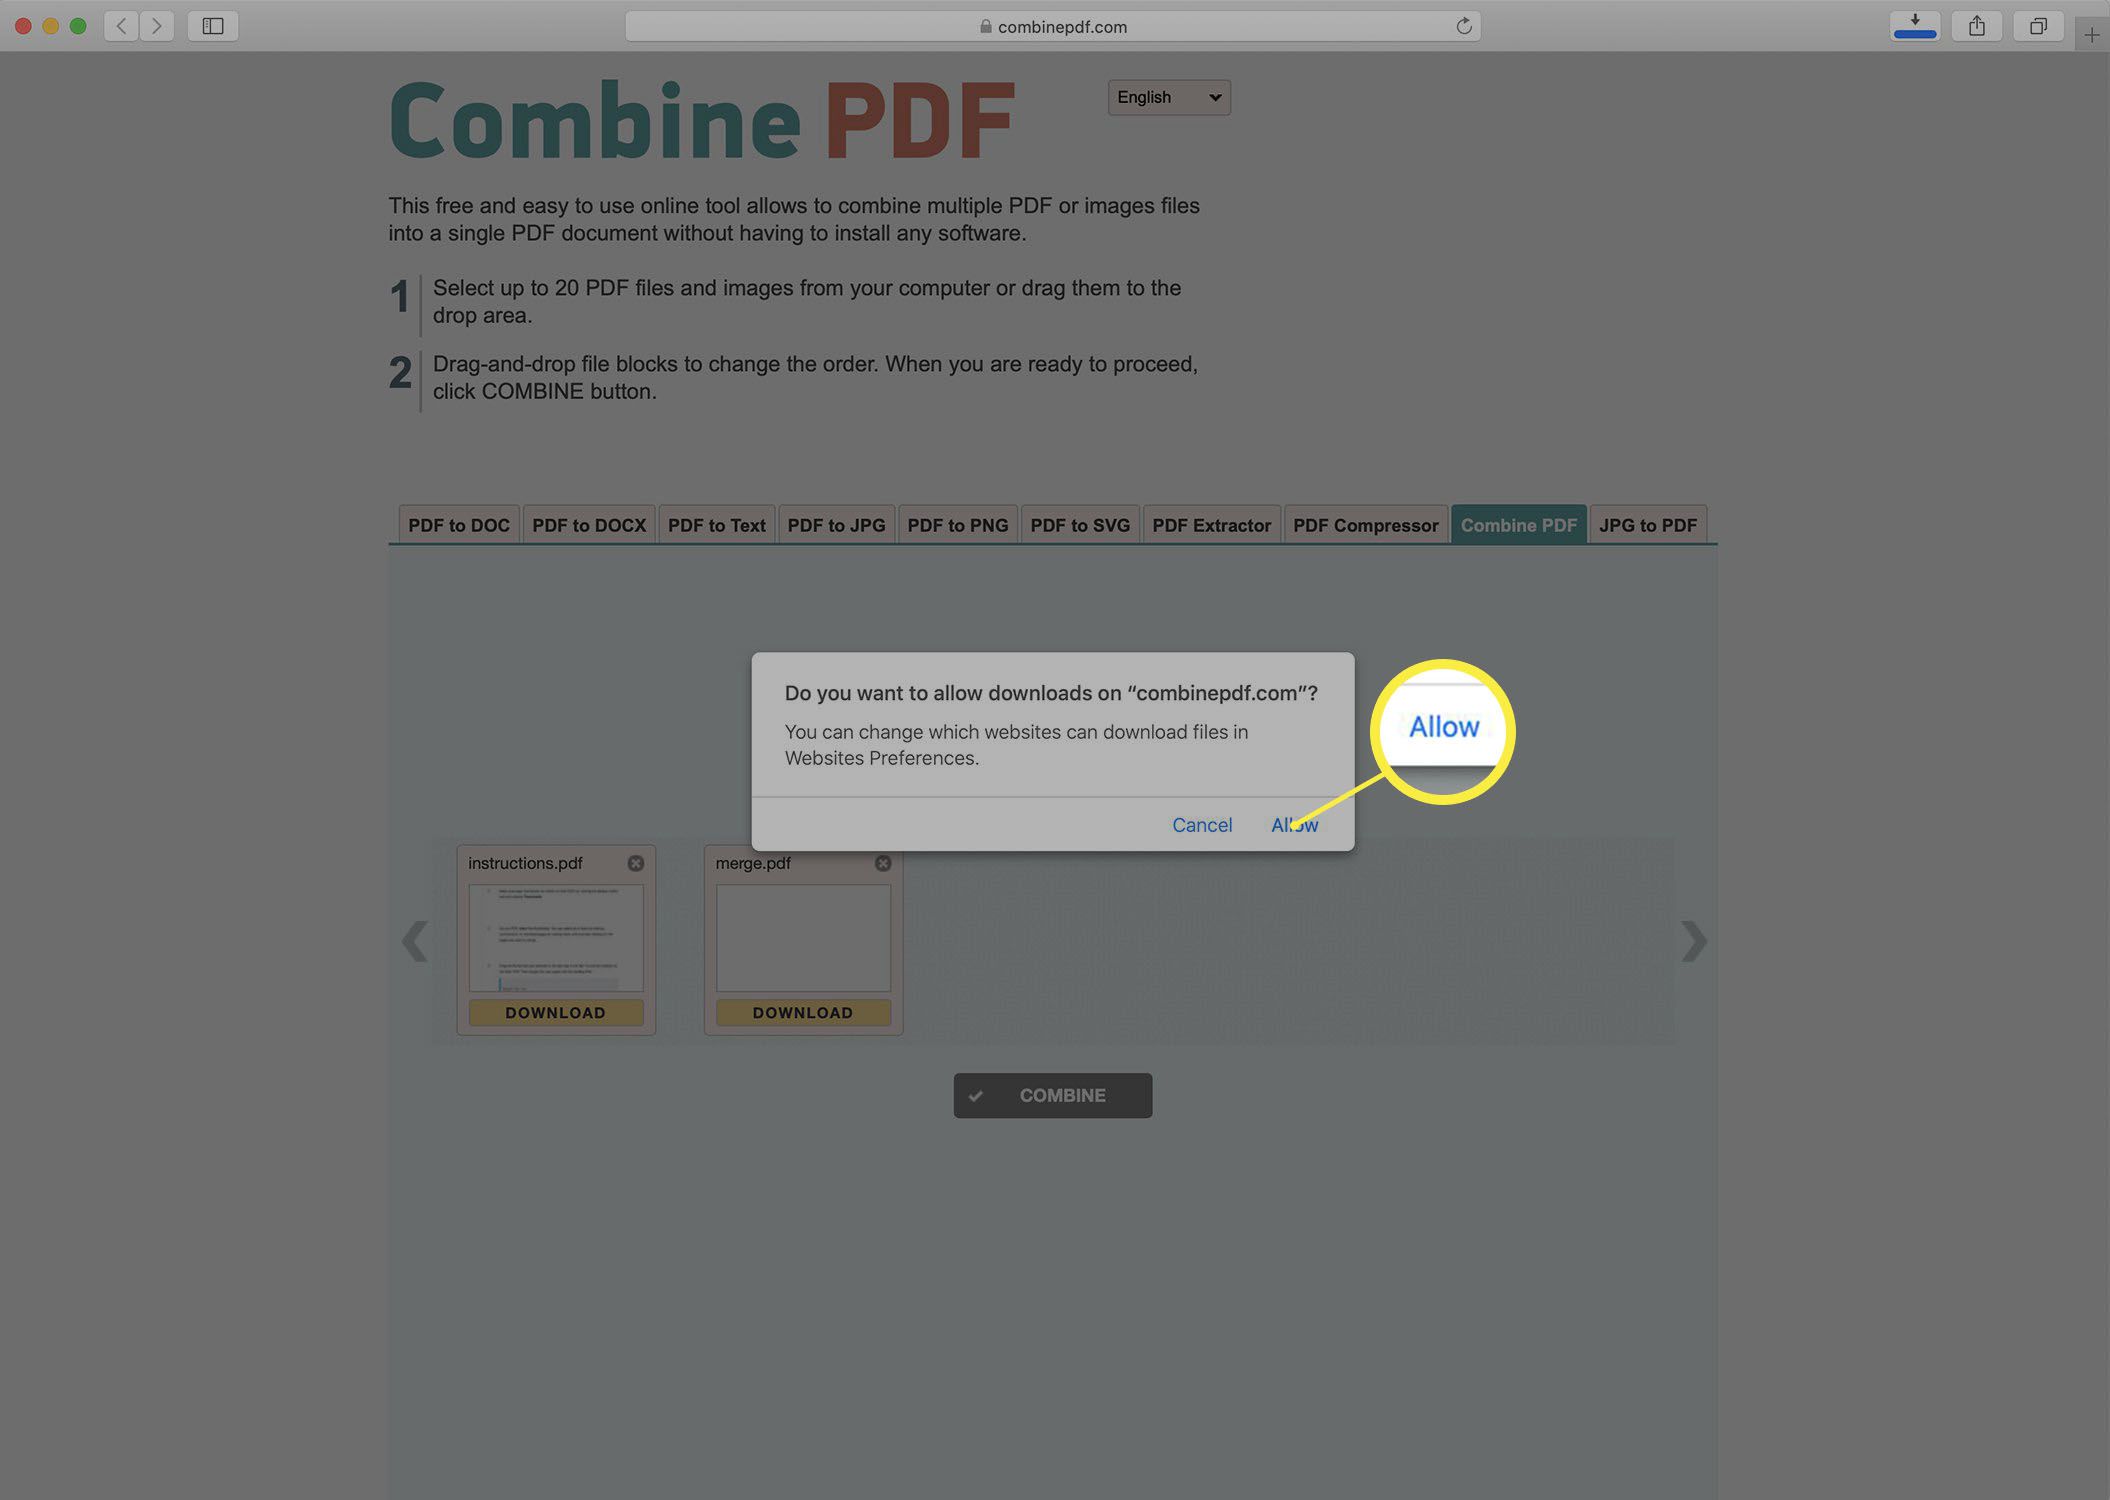 Captura de tela baixando um PDF mesclado do site Combine PDF.